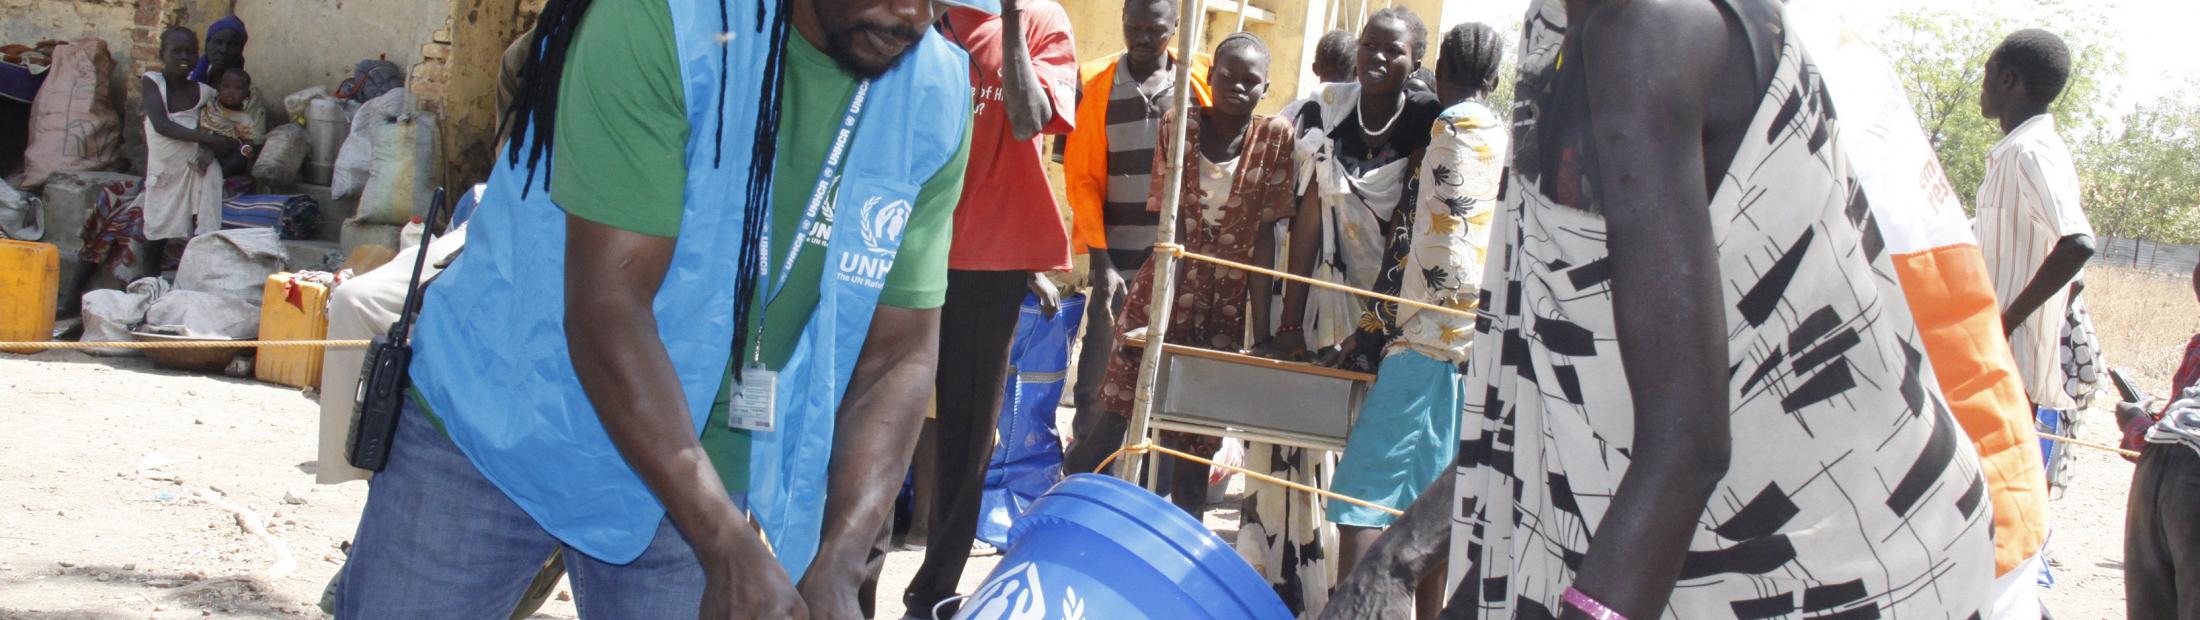 Comienza la distribución de material de ayuda humanitaria en Malakal, Sudán del Sur